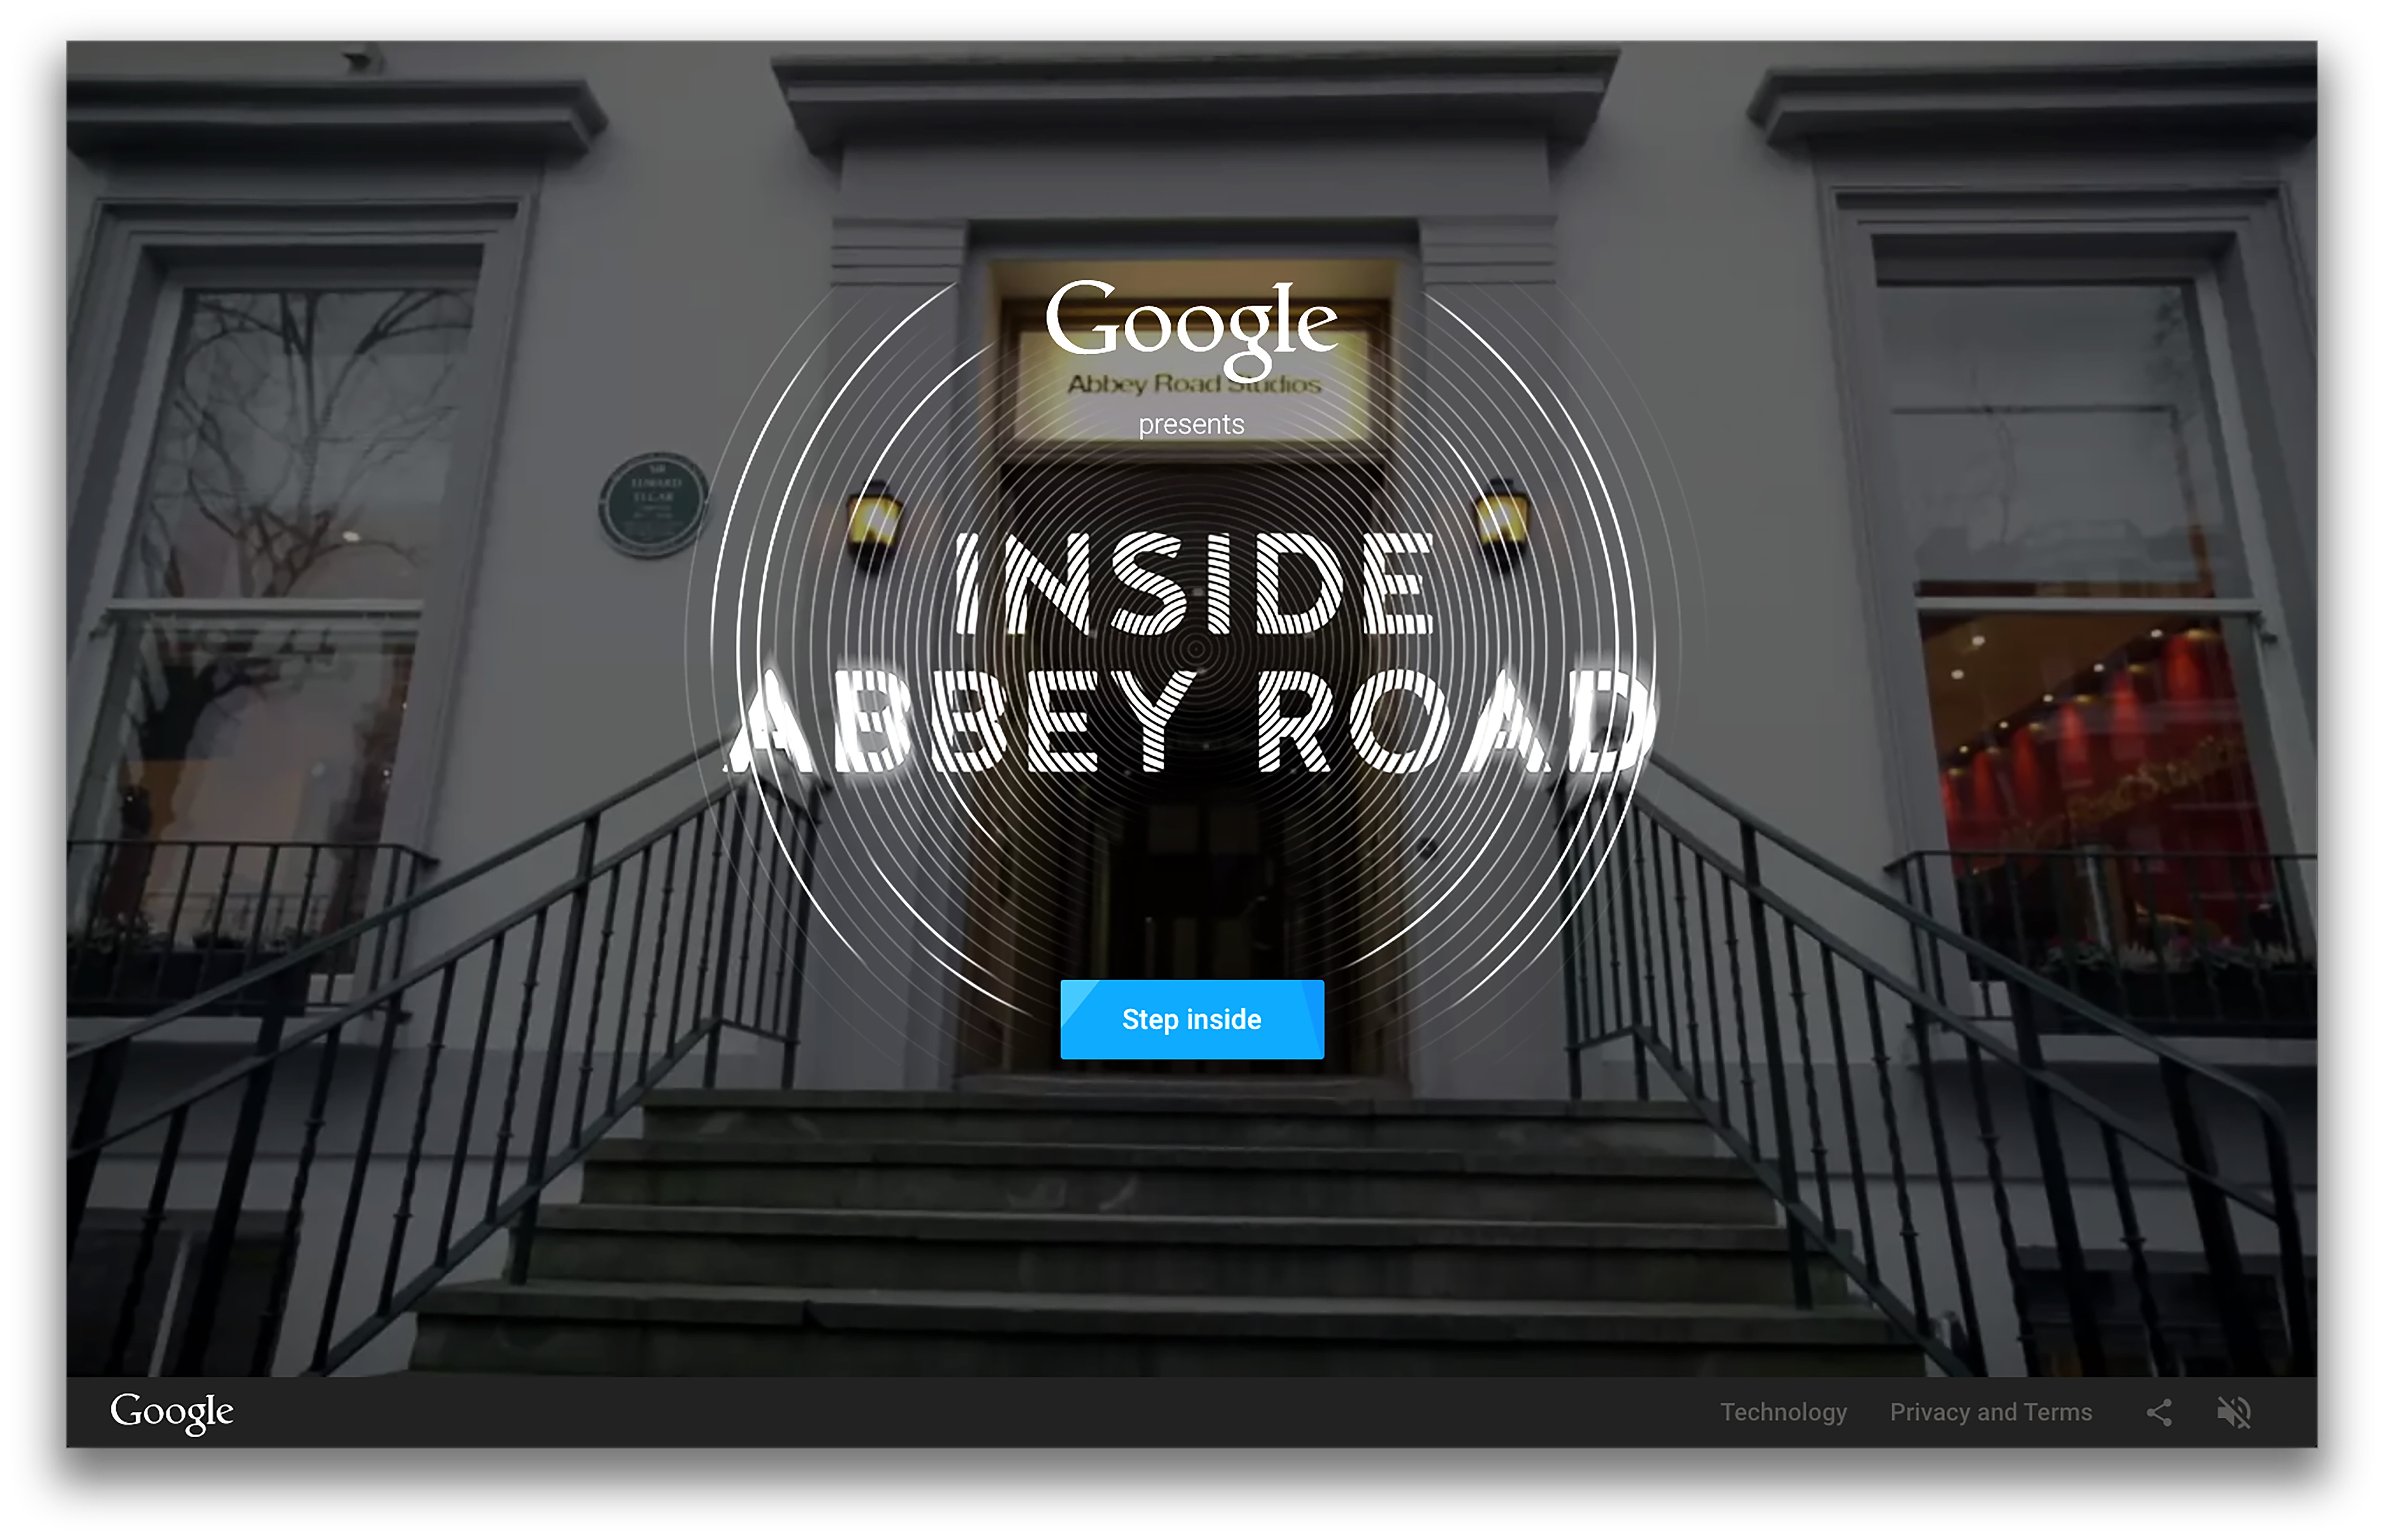 Take a look inside Abbey Road Studios